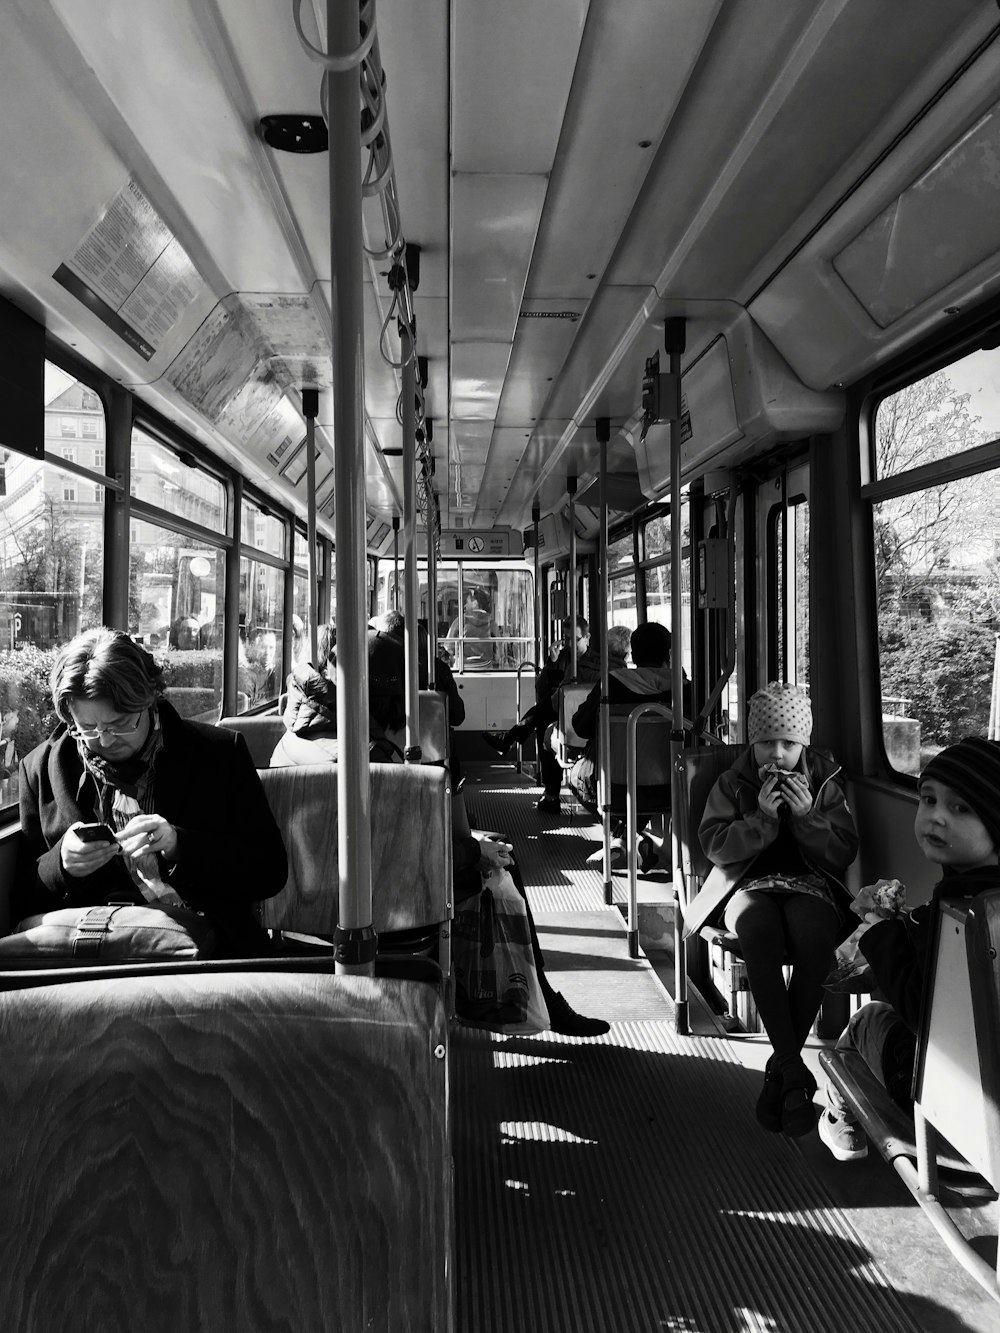 Foto in scala di grigi di una persona all'interno dell'autobus